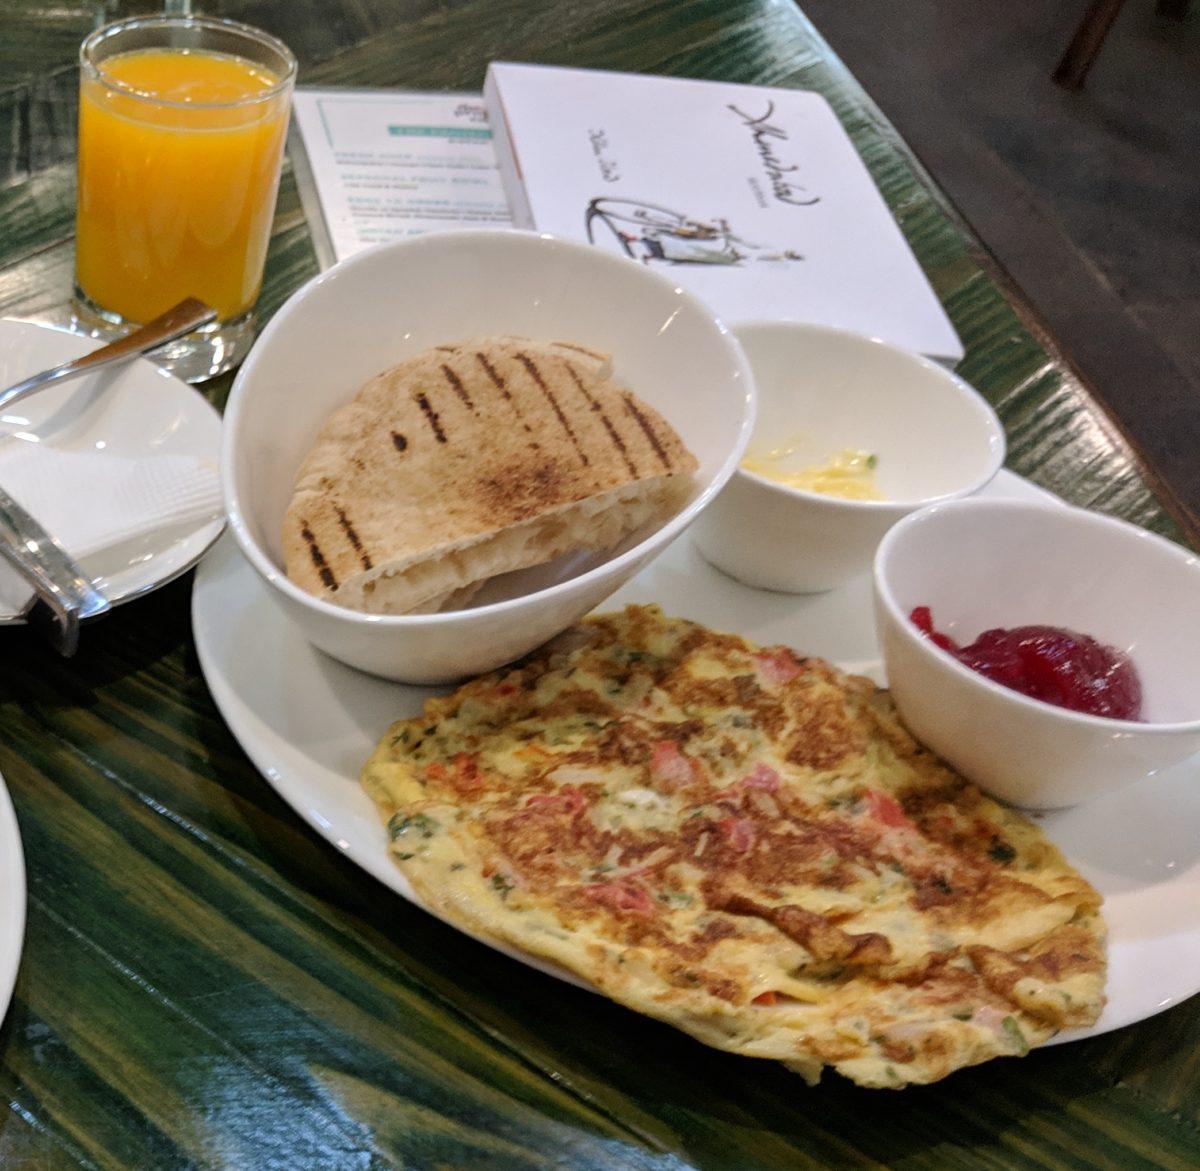 omelet breakfast at restaurant